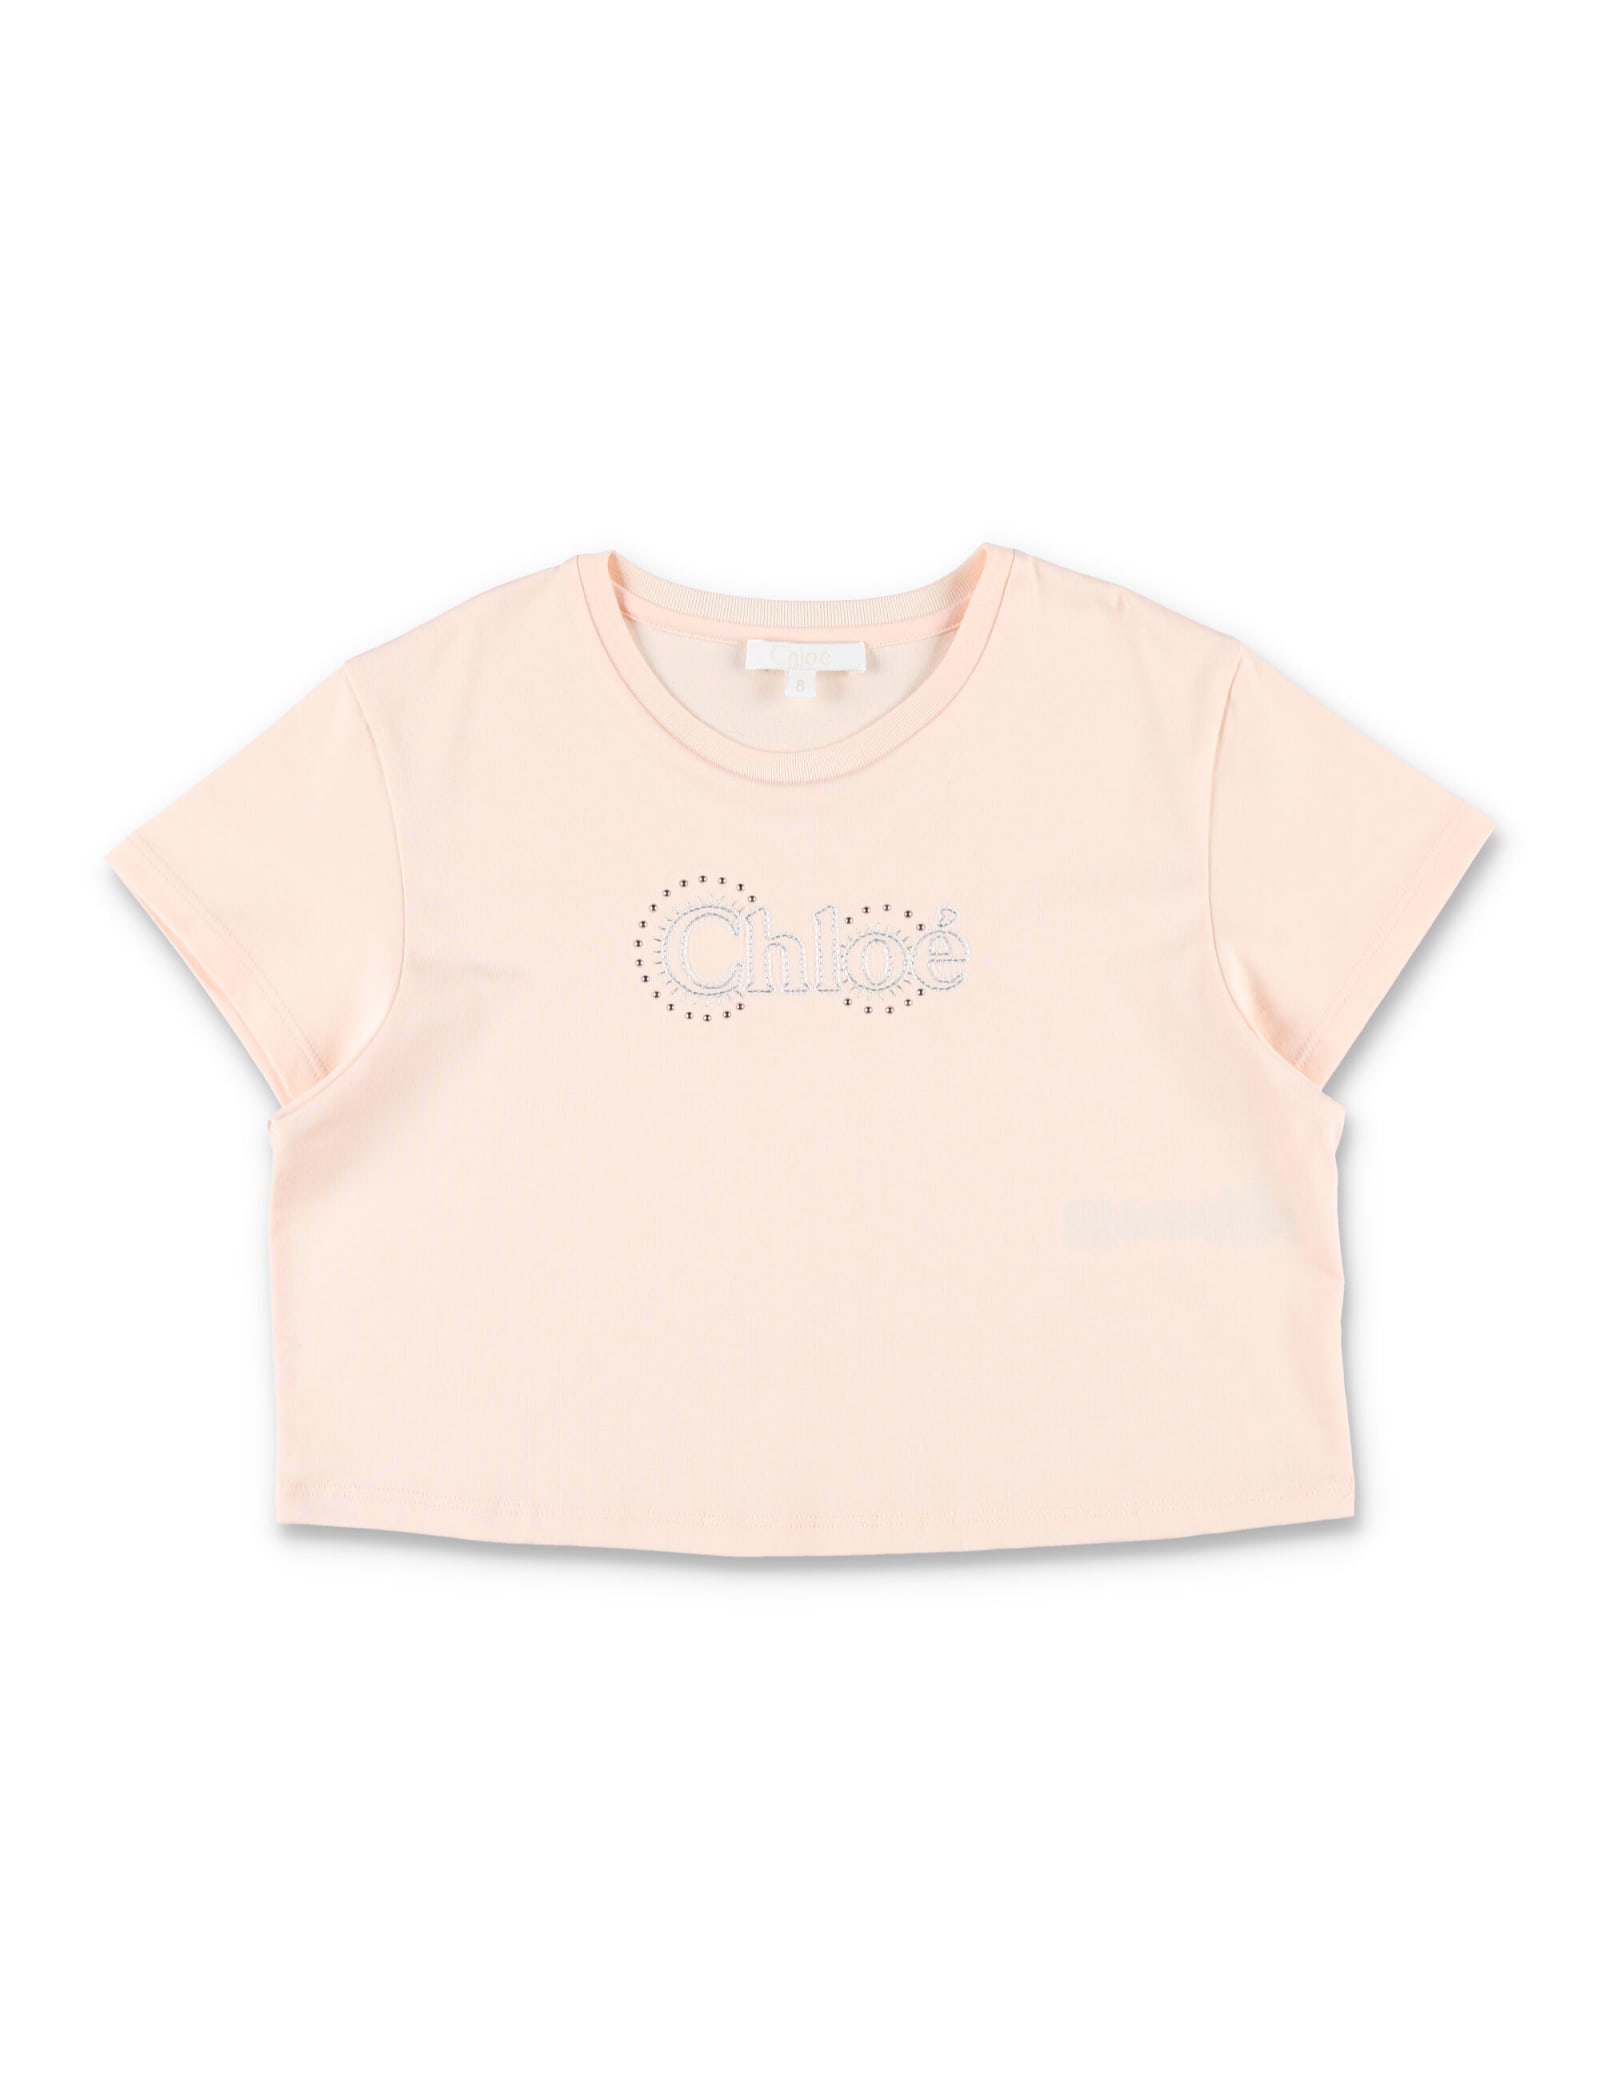 Chloé Kids' Logo T-shirt In Peach